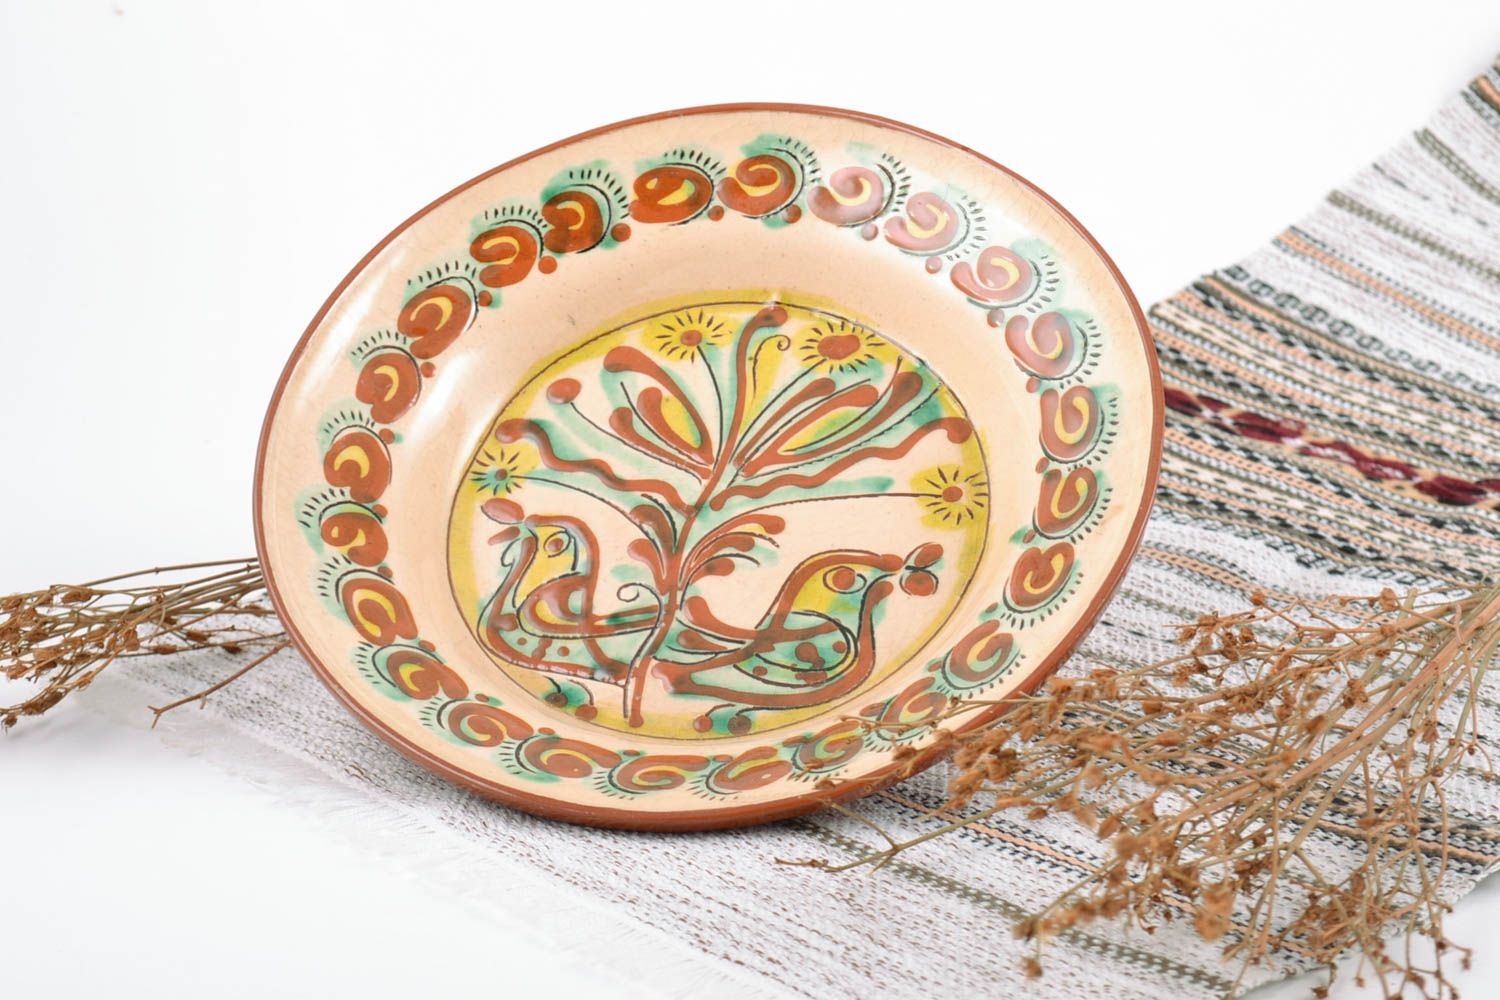 Декоративная тарелка глиняная расписанная вручную и покрытая глазурью небольшая фото 1